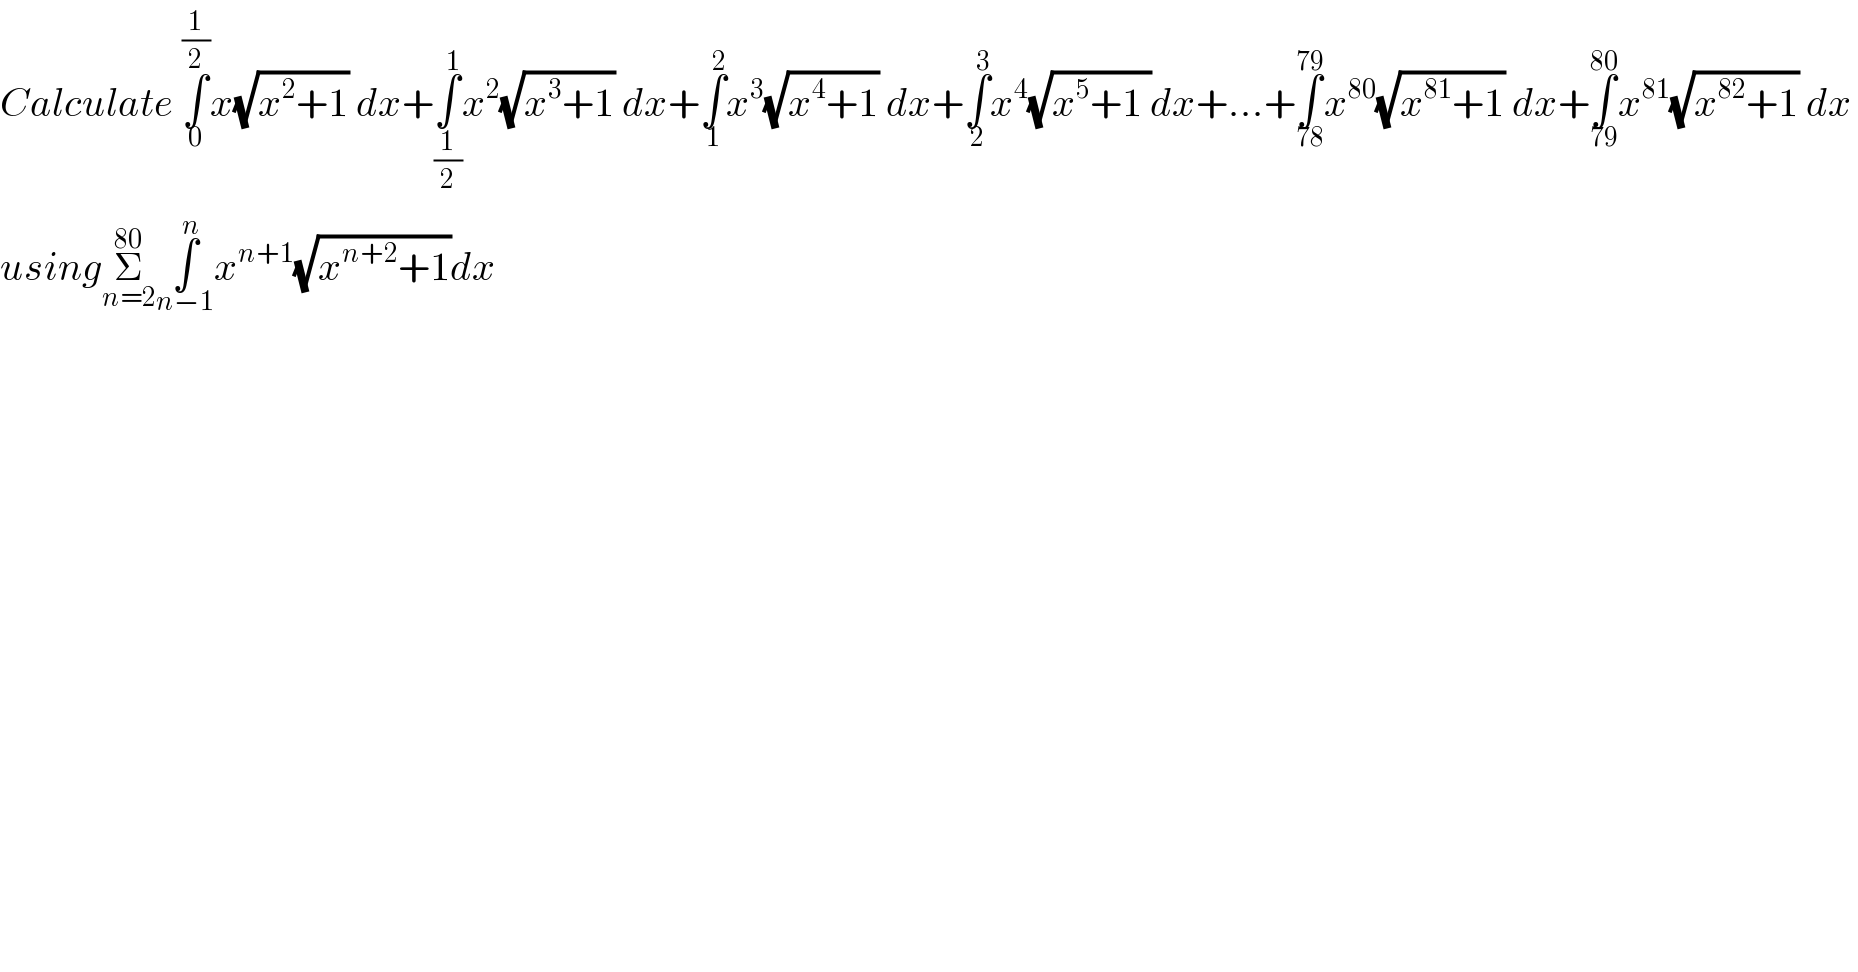 Calculate ∫_0 ^(1/2) x(√(x^2 +1)) dx+∫_(1/2) ^1 x^2 (√(x^3 +1)) dx+∫_1 ^2 x^3 (√(x^4 +1)) dx+∫_2 ^3 x^4 (√(x^5 +1 ))dx+...+∫_(78) ^(79) x^(80) (√(x^(81) +1)) dx+∫_(79) ^(80) x^(81) (√(x^(82) +1)) dx  usingΣ_(n=2) ^(80) ∫_(n−1) ^n x^(n+1) (√(x^(n+2) +1))dx  